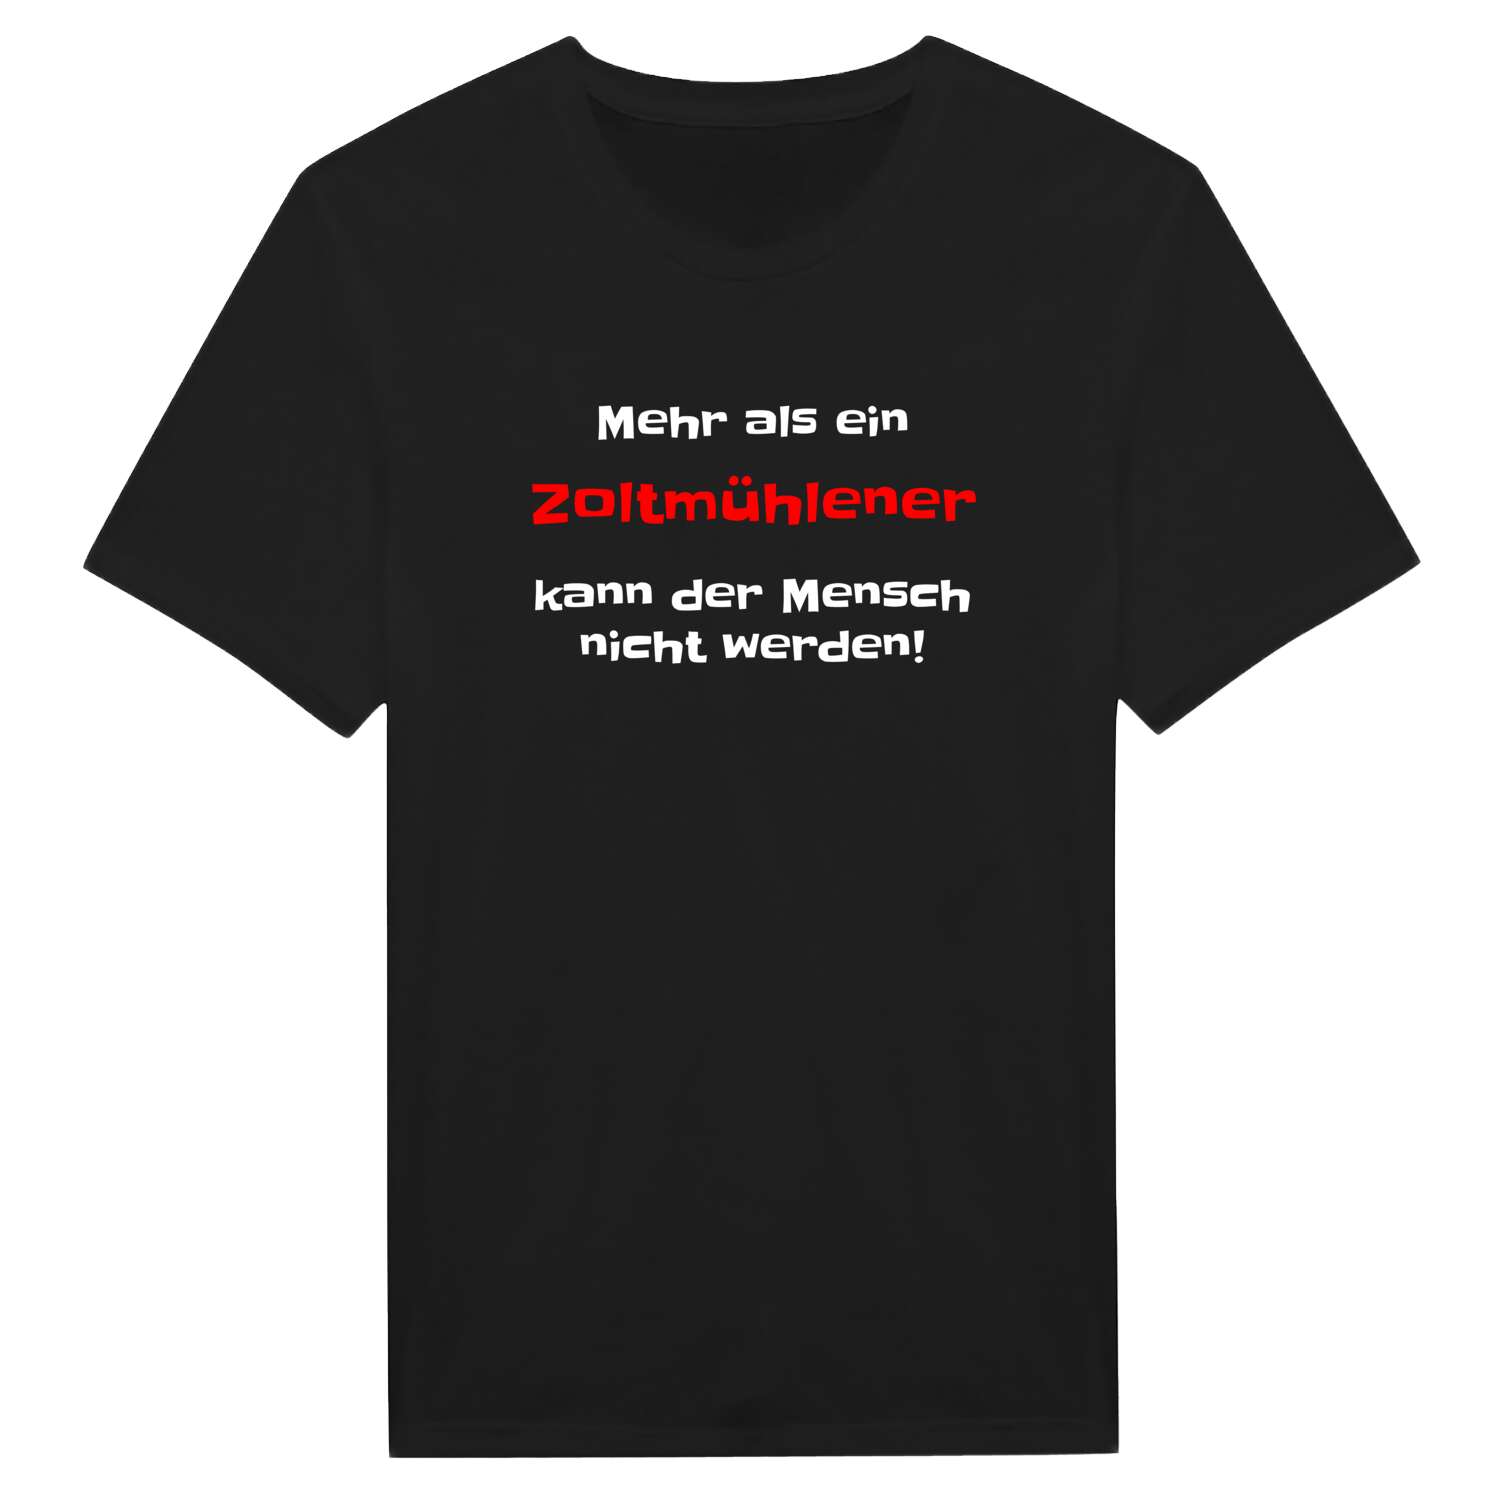 Zoltmühle T-Shirt »Mehr als ein«